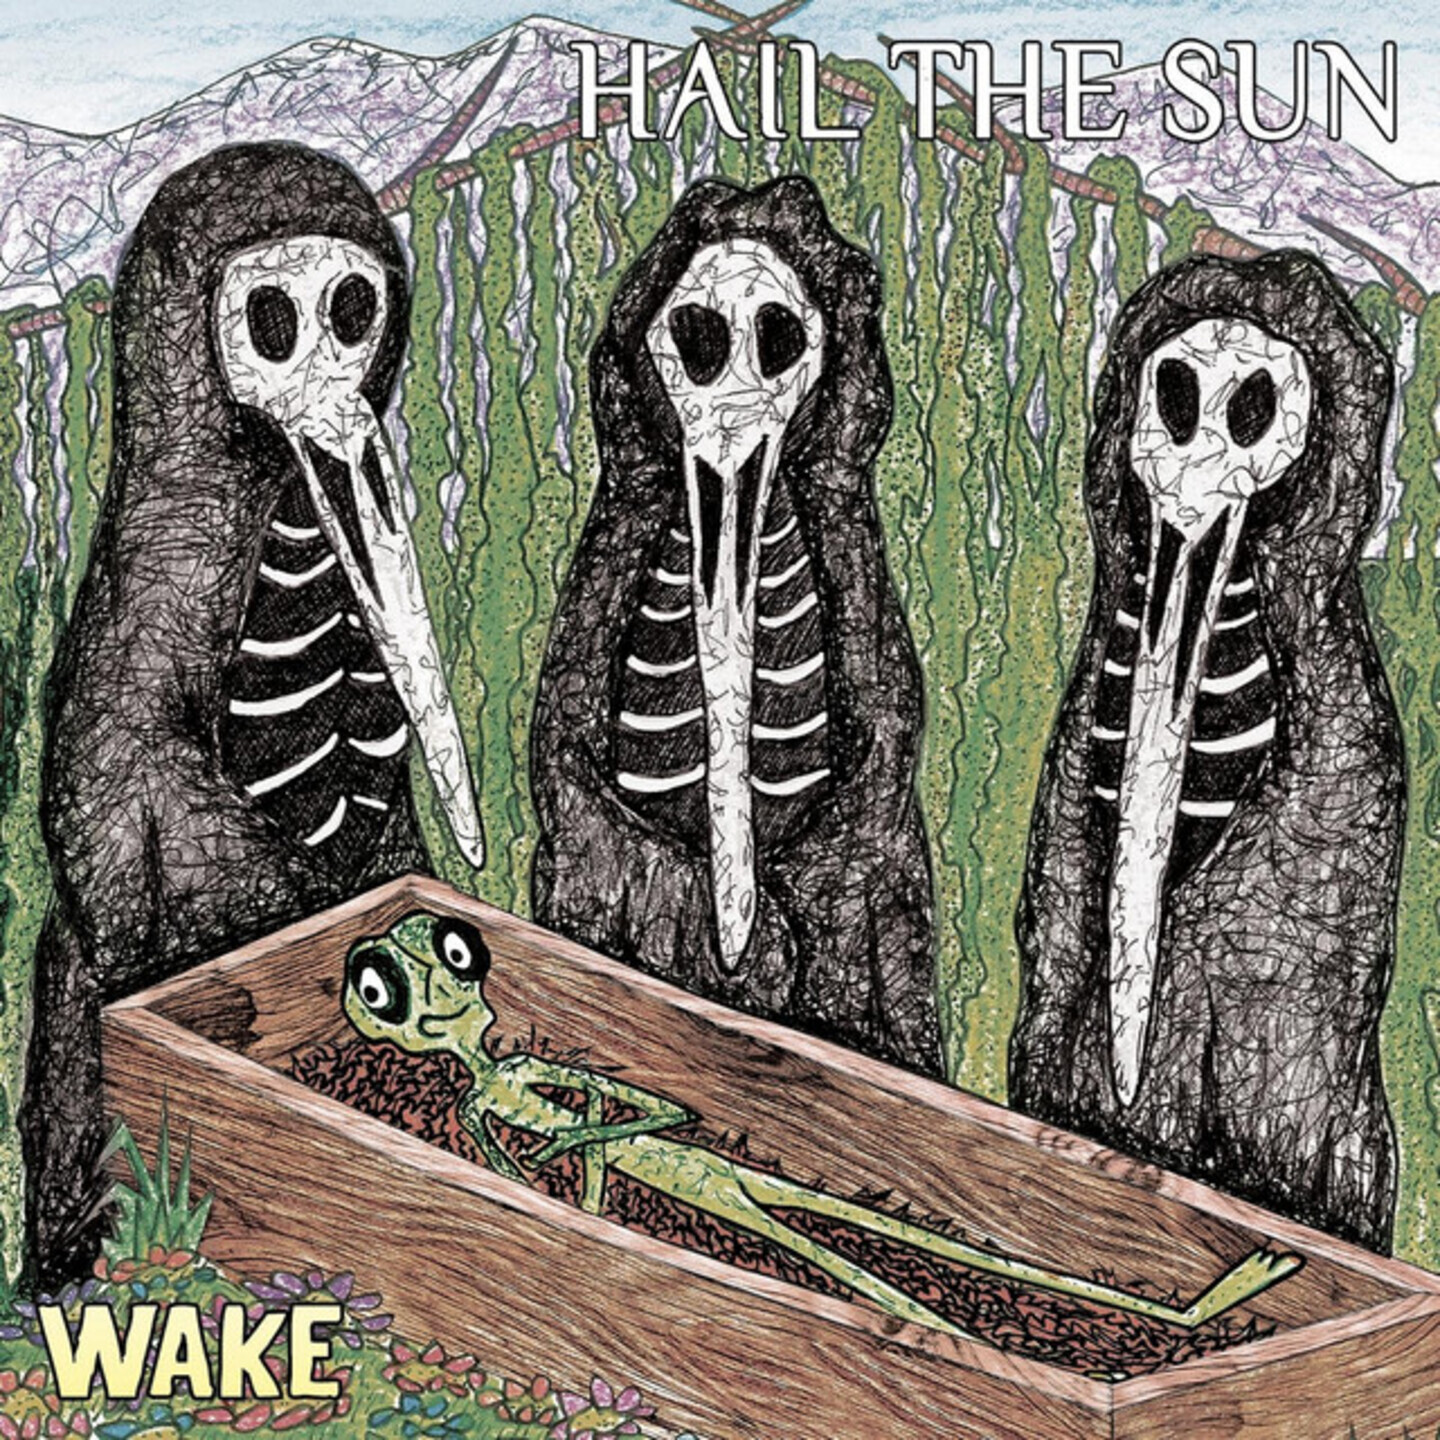 HAIL THE SUN - Wake  LP Limited Green & Aqua Mix vinyl